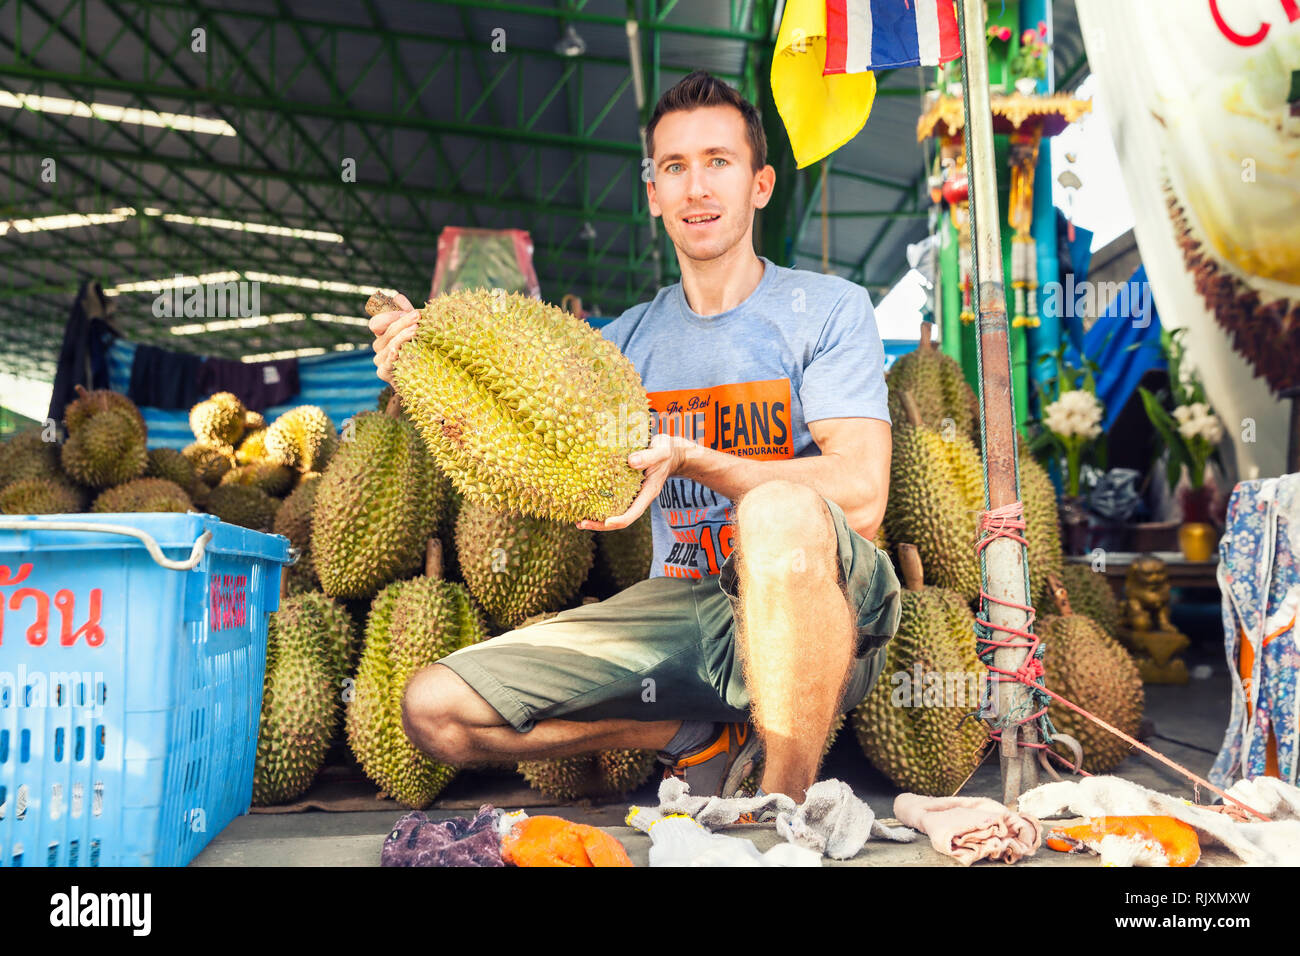 Il viaggiatore dell'uomo tiene in mano la frutta tropicale esotica popolare conosciuta per il relativo odore fetid di sudore / frutti thailandesi: Durian, re dei frutti tropicali Foto Stock